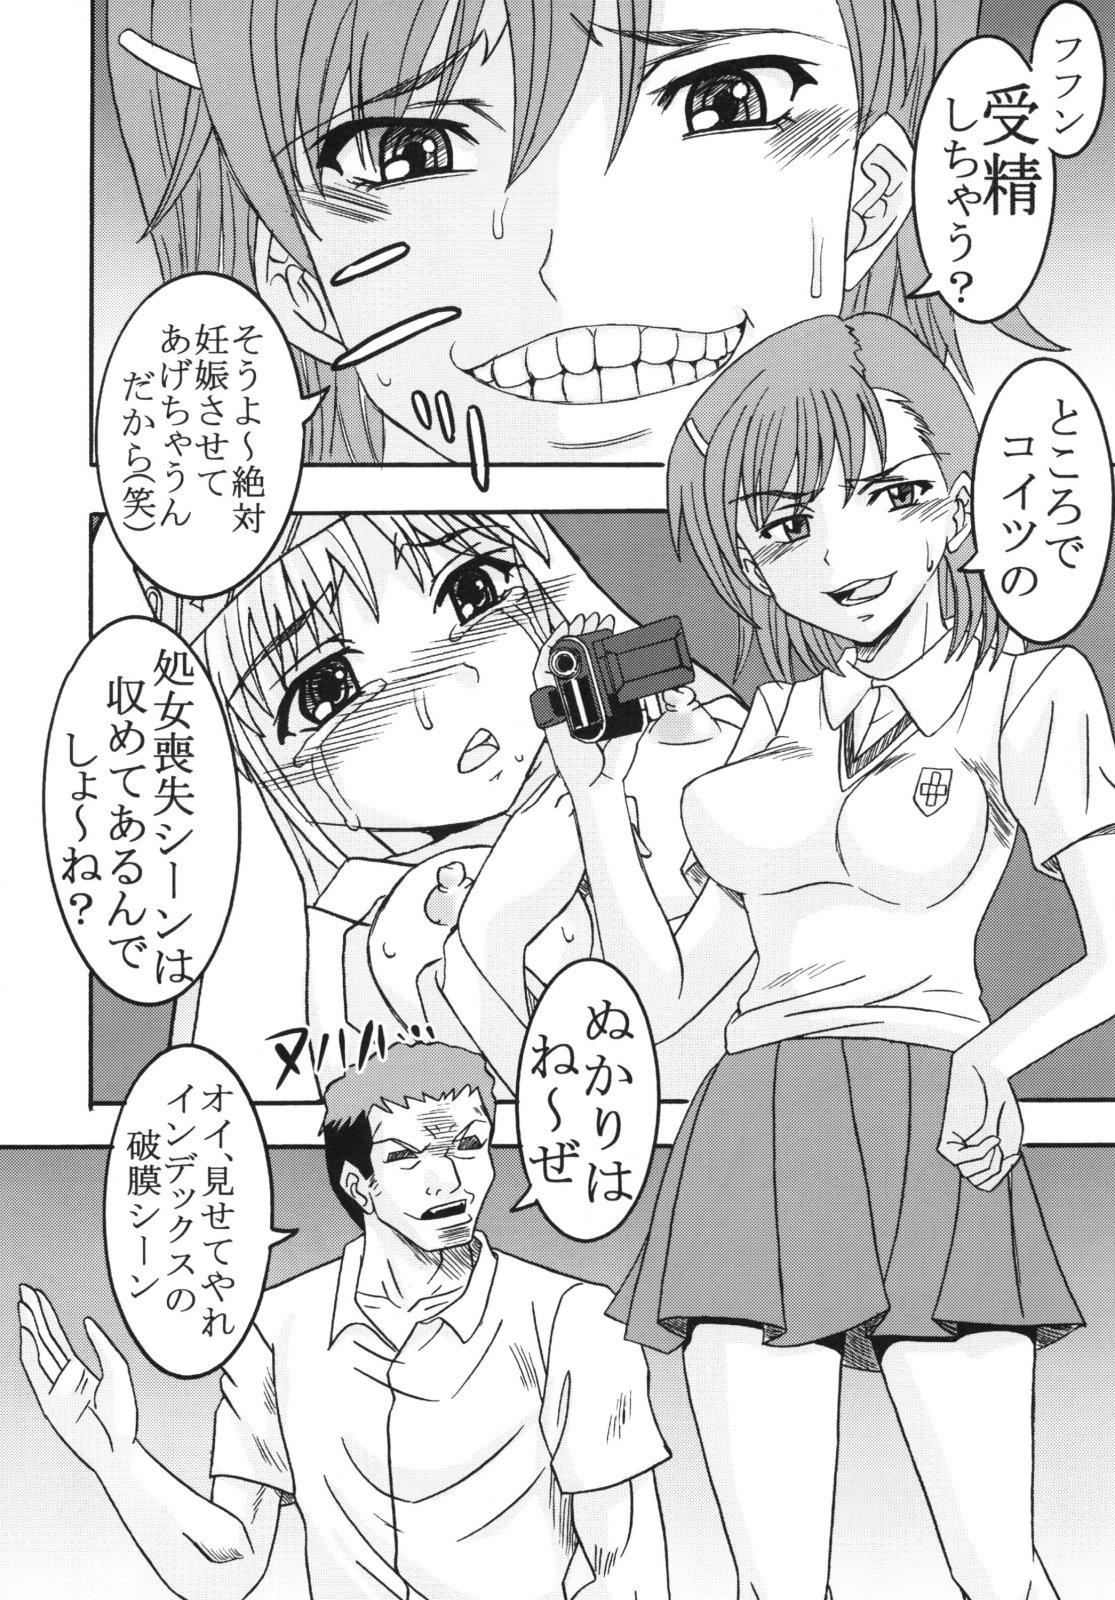 Tinder Toaru Otaku no Index #2 - Toaru majutsu no index Gay Brownhair - Page 12